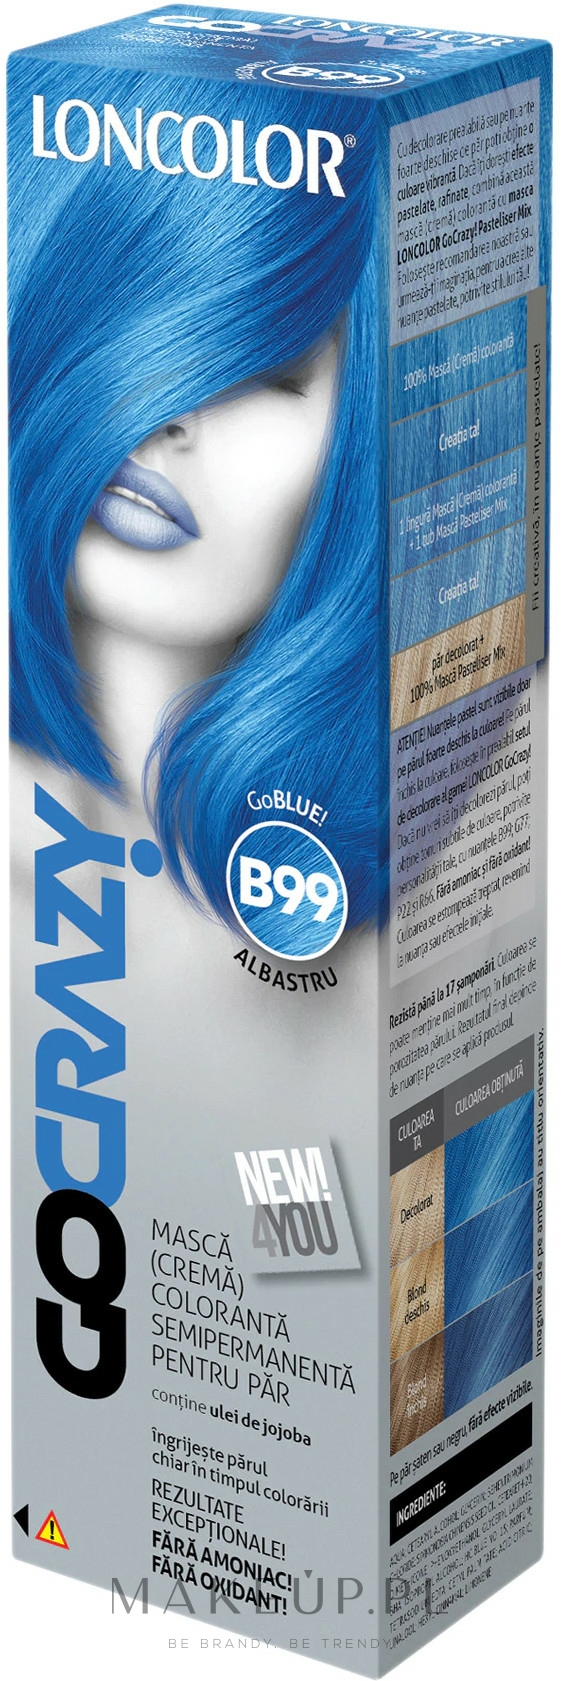 Półtrwała farba do włosów - Loncolor GoCRAZY! — Zdjęcie B99 - GoBlue!